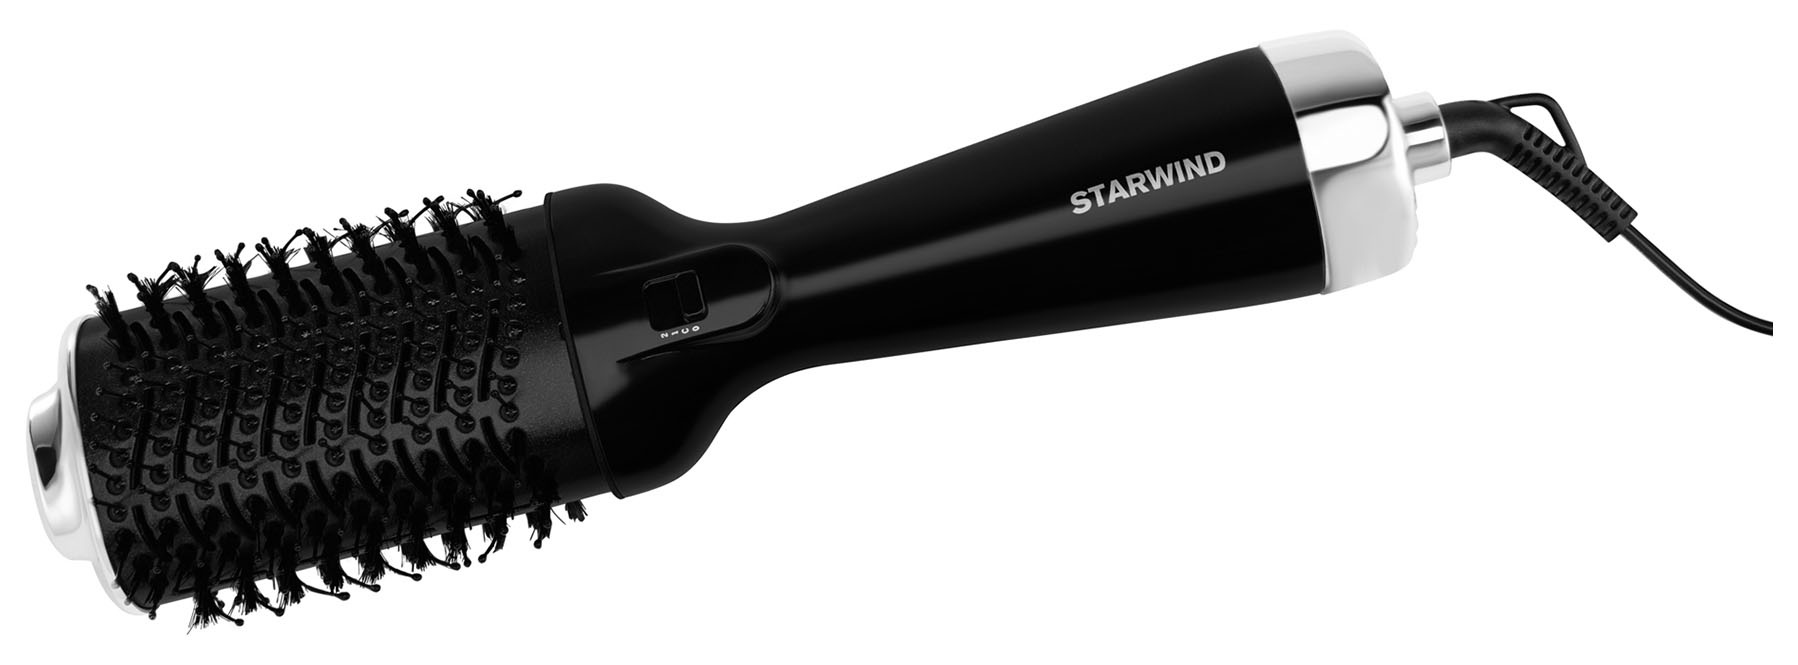 Фен-щетка Starwind SHB 7760 1200Вт черный/серебристый